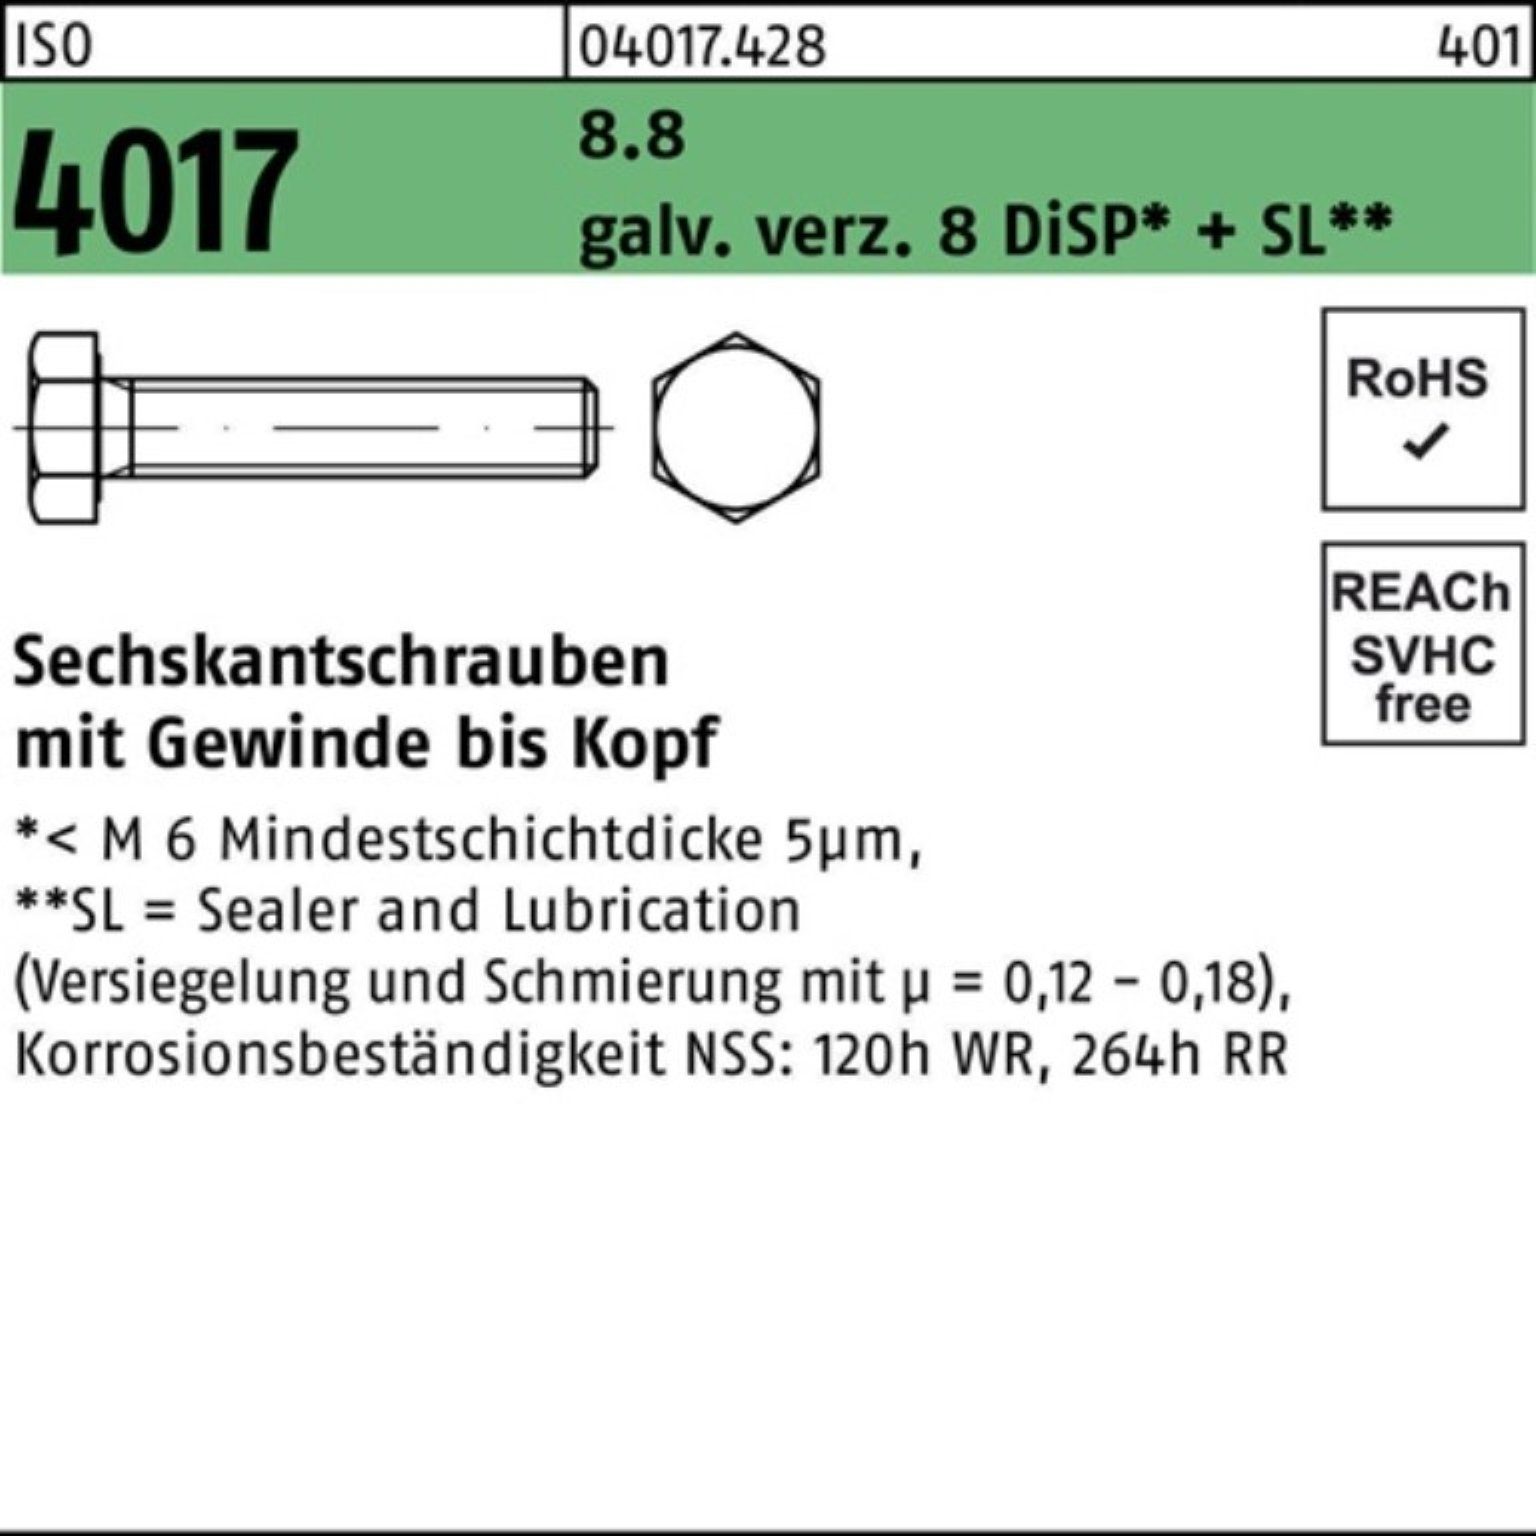 ISO DiSP+ galv.verz. 8.8 500er 22 8 VG Bufab Sechskantschraube M6x 4017 Sechskantschraube Pack